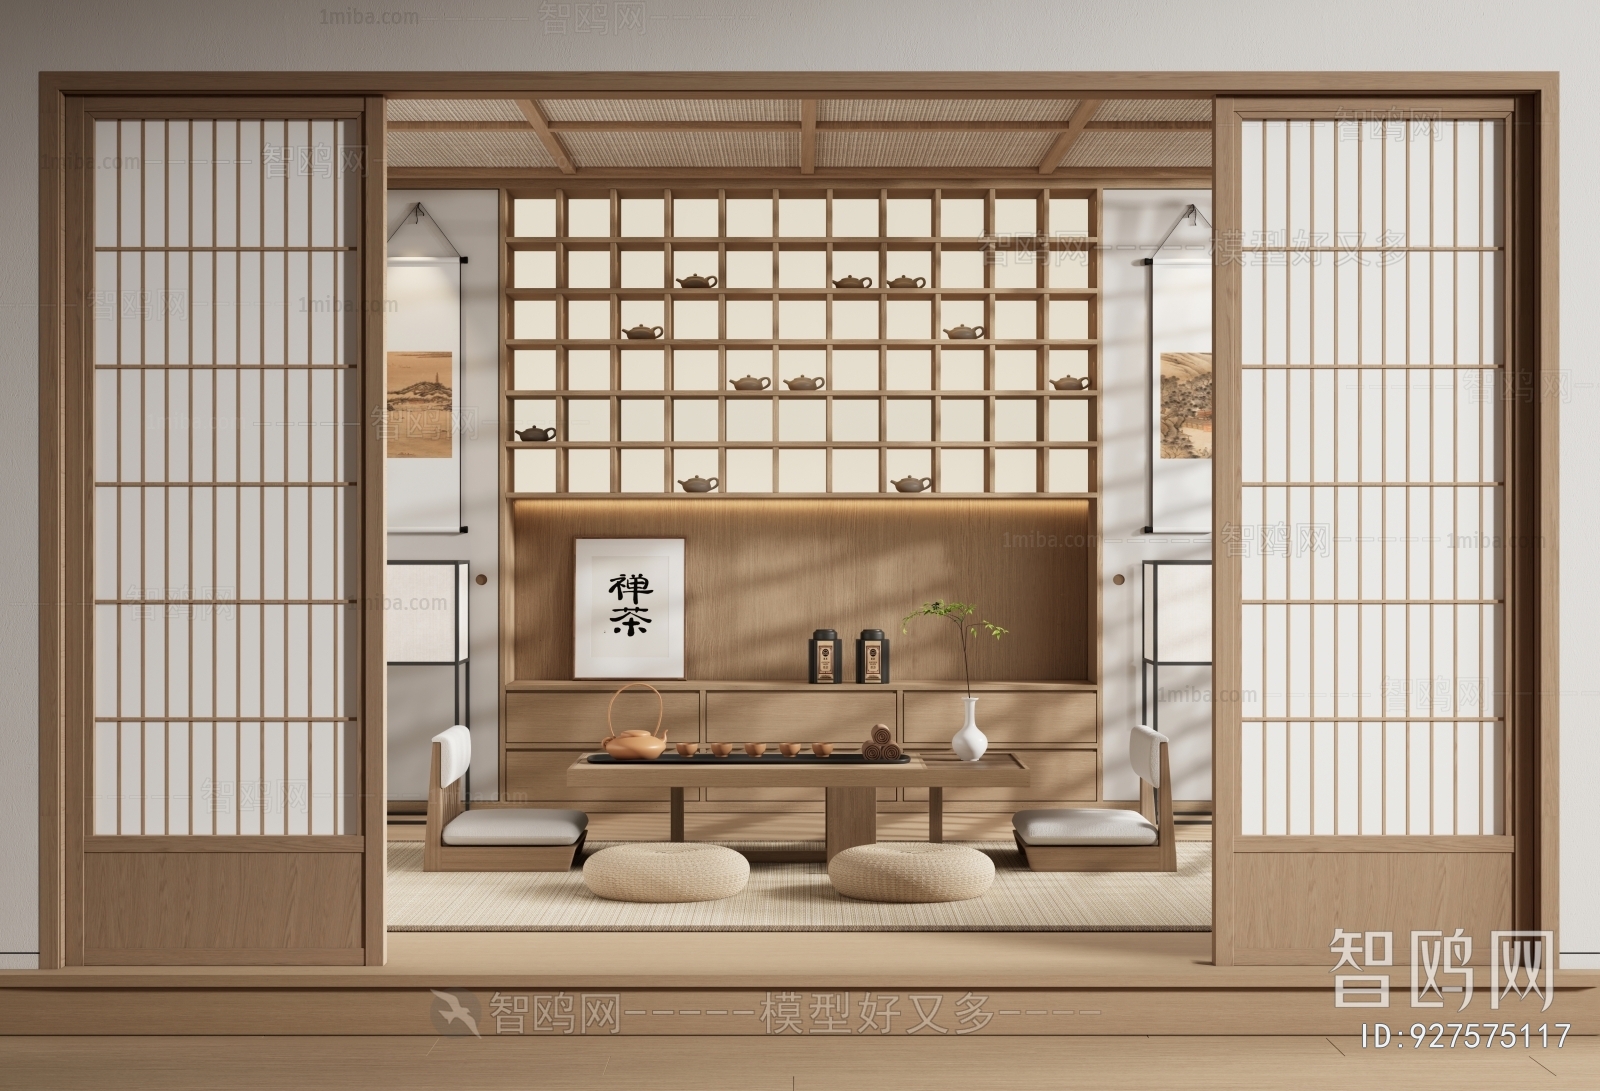 Japanese Style Tea House